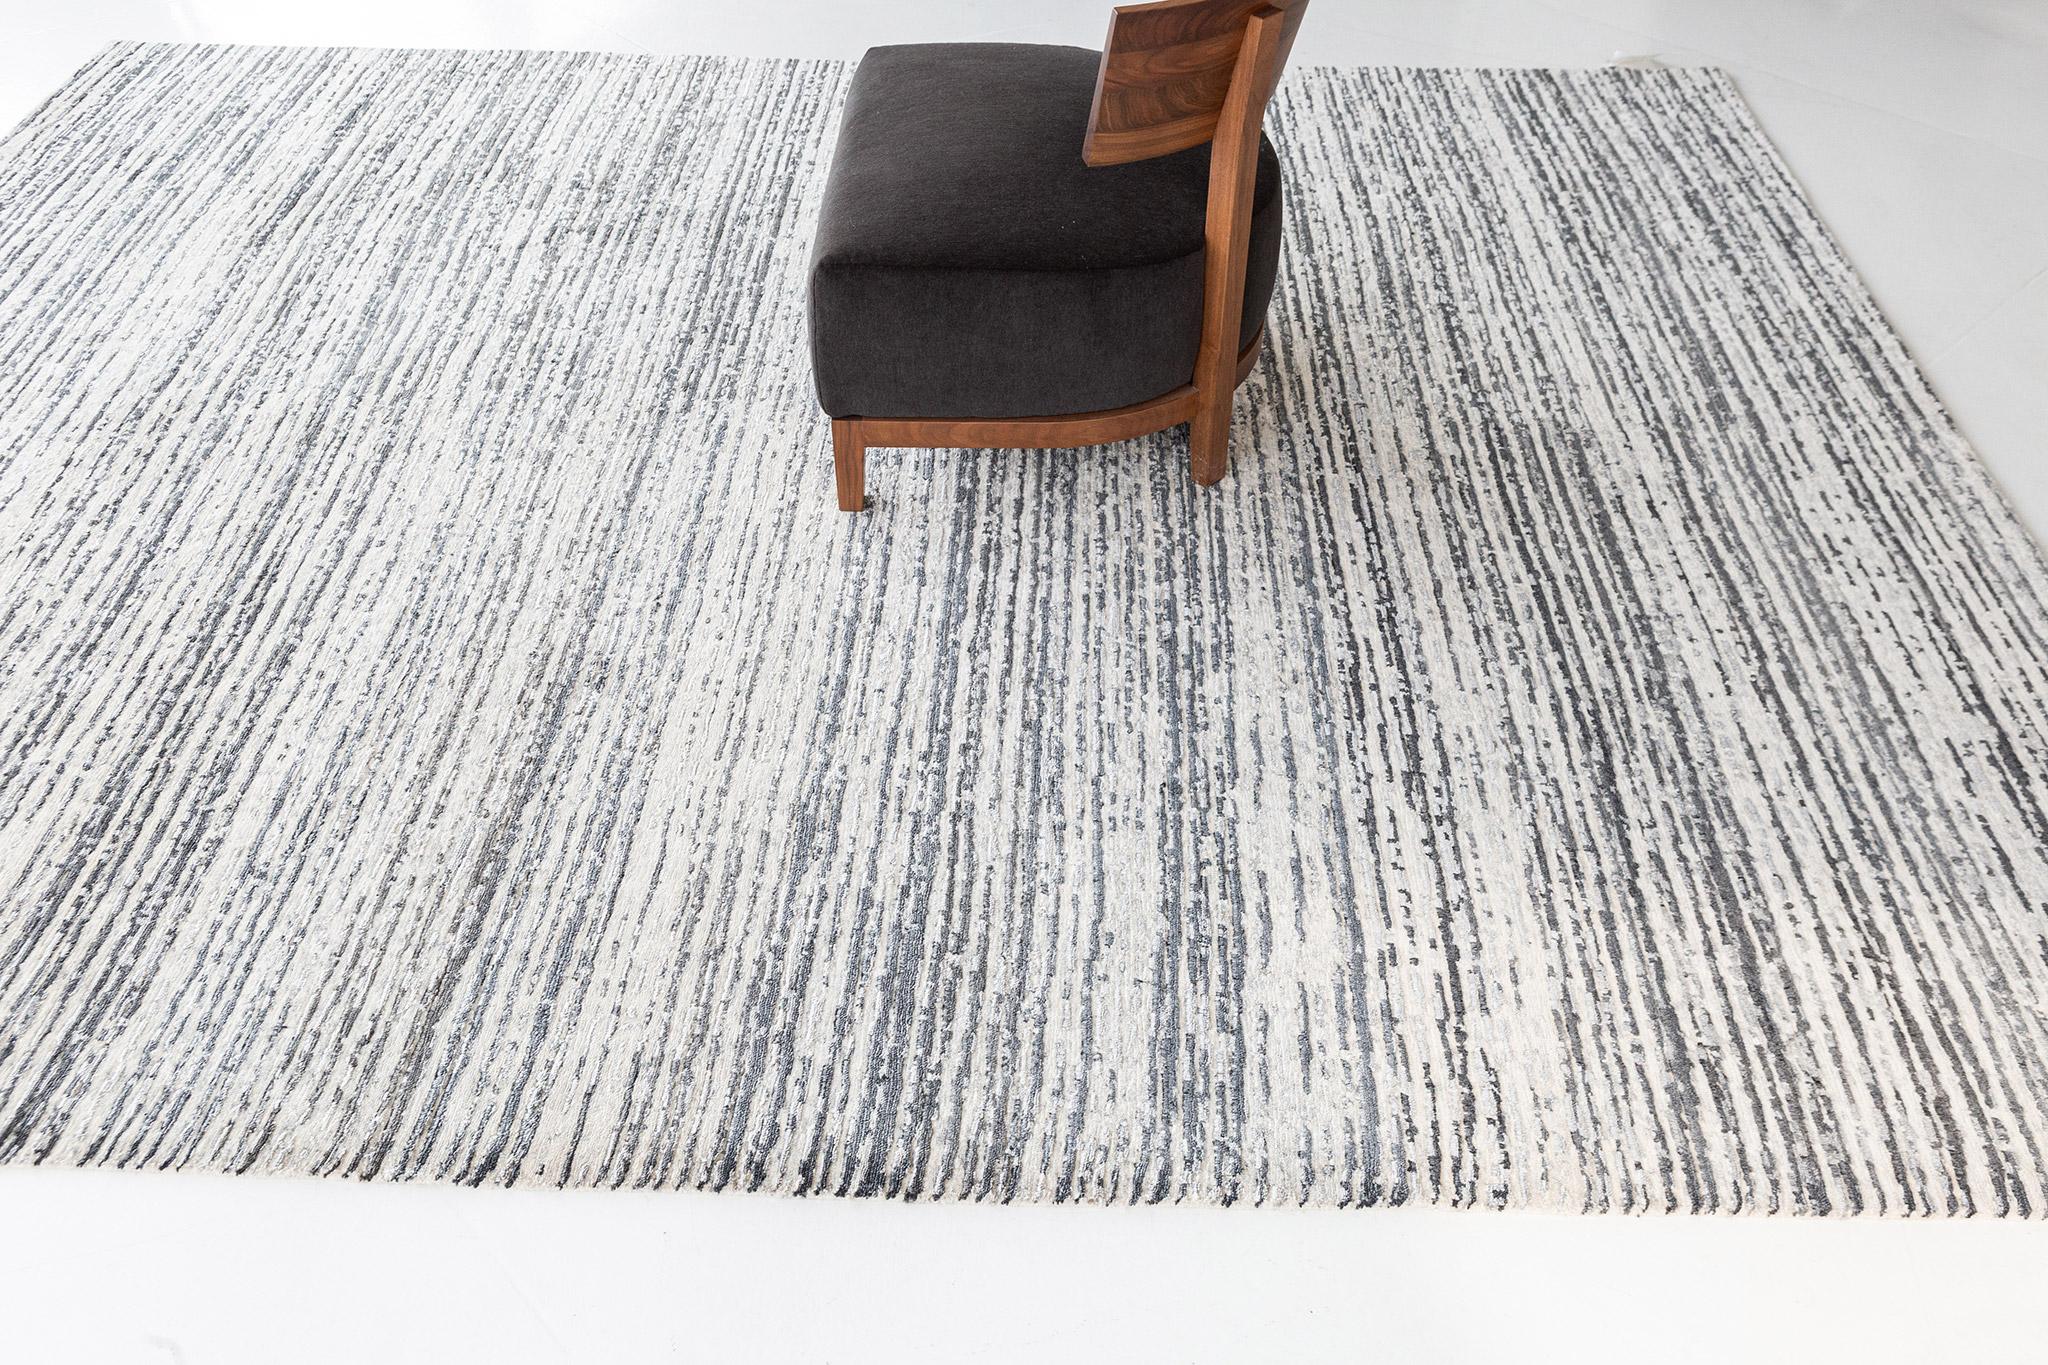 Dieser Teppich aus Wolle und Baumwolle hat ein horizontales Strichmuster mit einem Kontrast aus Jet und Weiß. Eine zeitgenössische und minimalistische Einrichtung passt zu Ihren modernen ROOMS. Ein Tafelaufsatz, der Ihre Gäste in Erstaunen versetzen